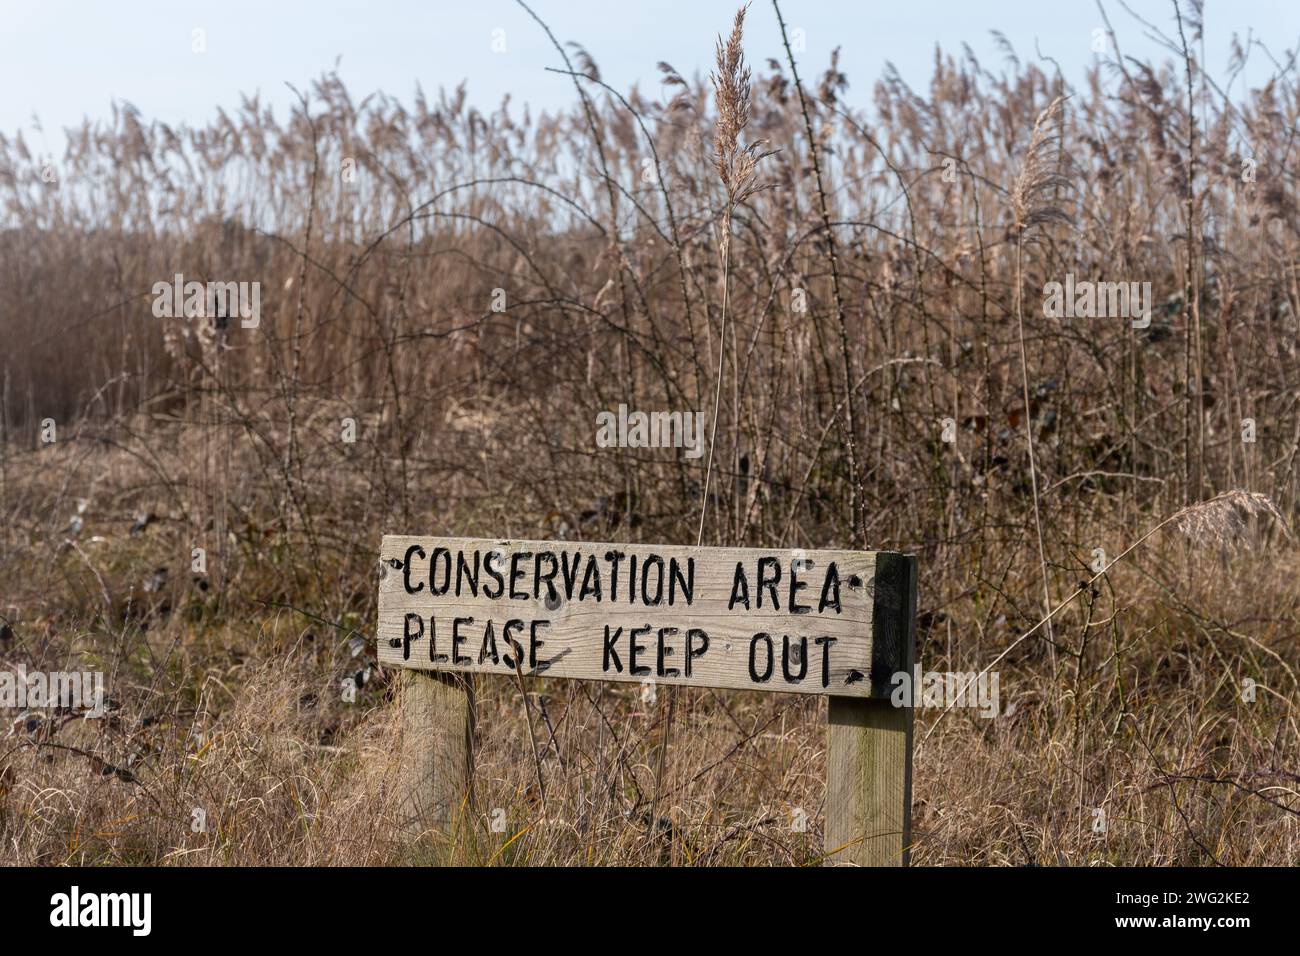 Signez zone de conservation Veuillez rester près des roseaux dans la zone humide de la réserve naturelle pour empêcher la perturbation de la faune par les personnes et les chiens, Angleterre, Royaume-Uni Banque D'Images